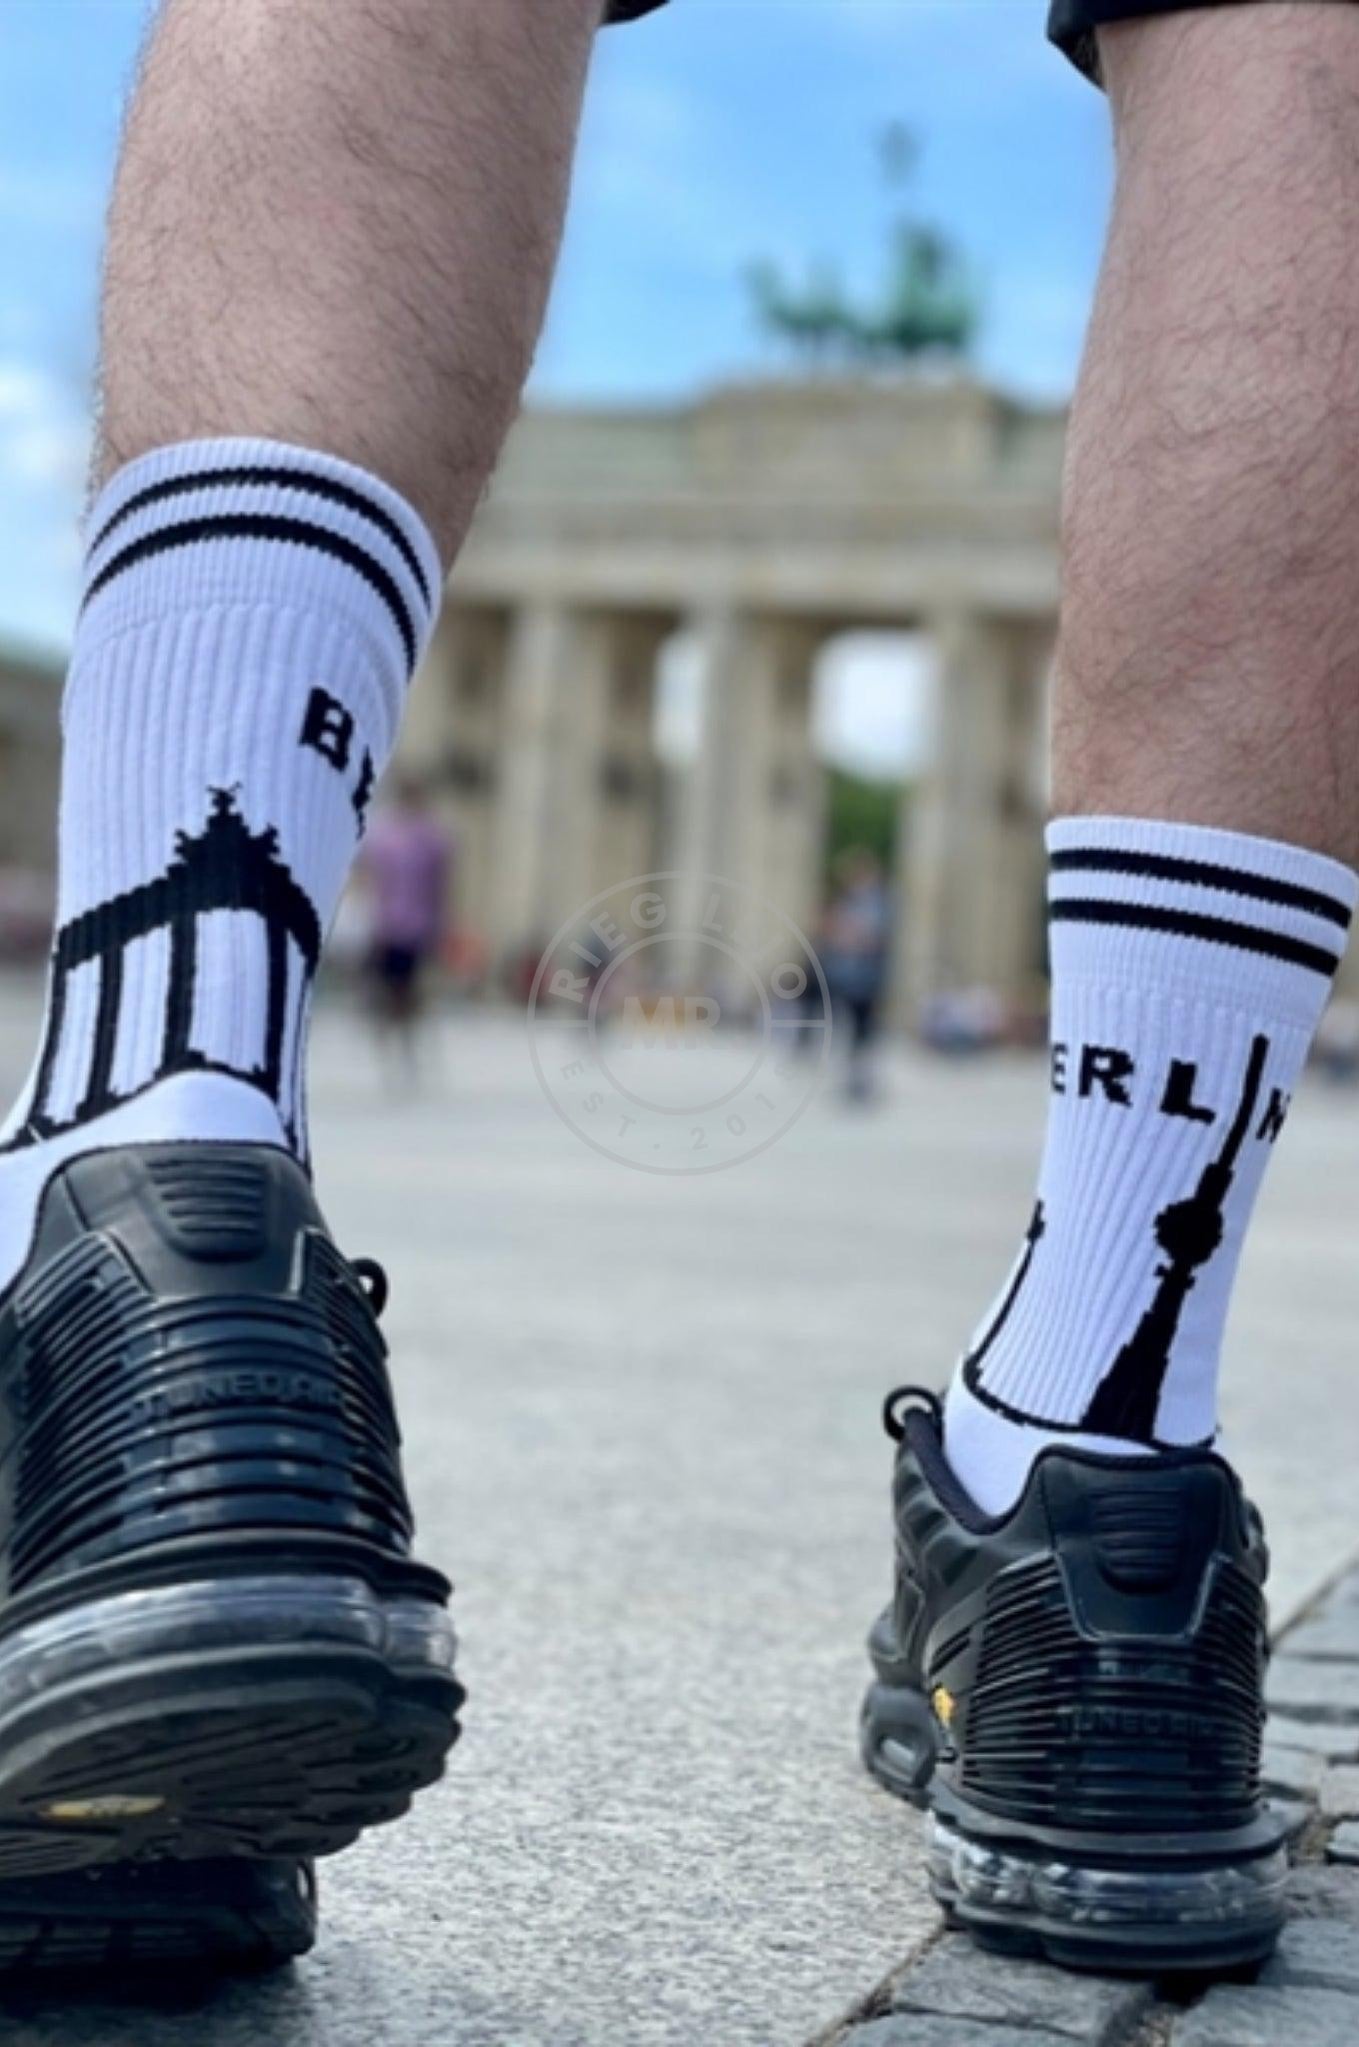 Sk8erboy Berlin Socks at MR. Riegillio